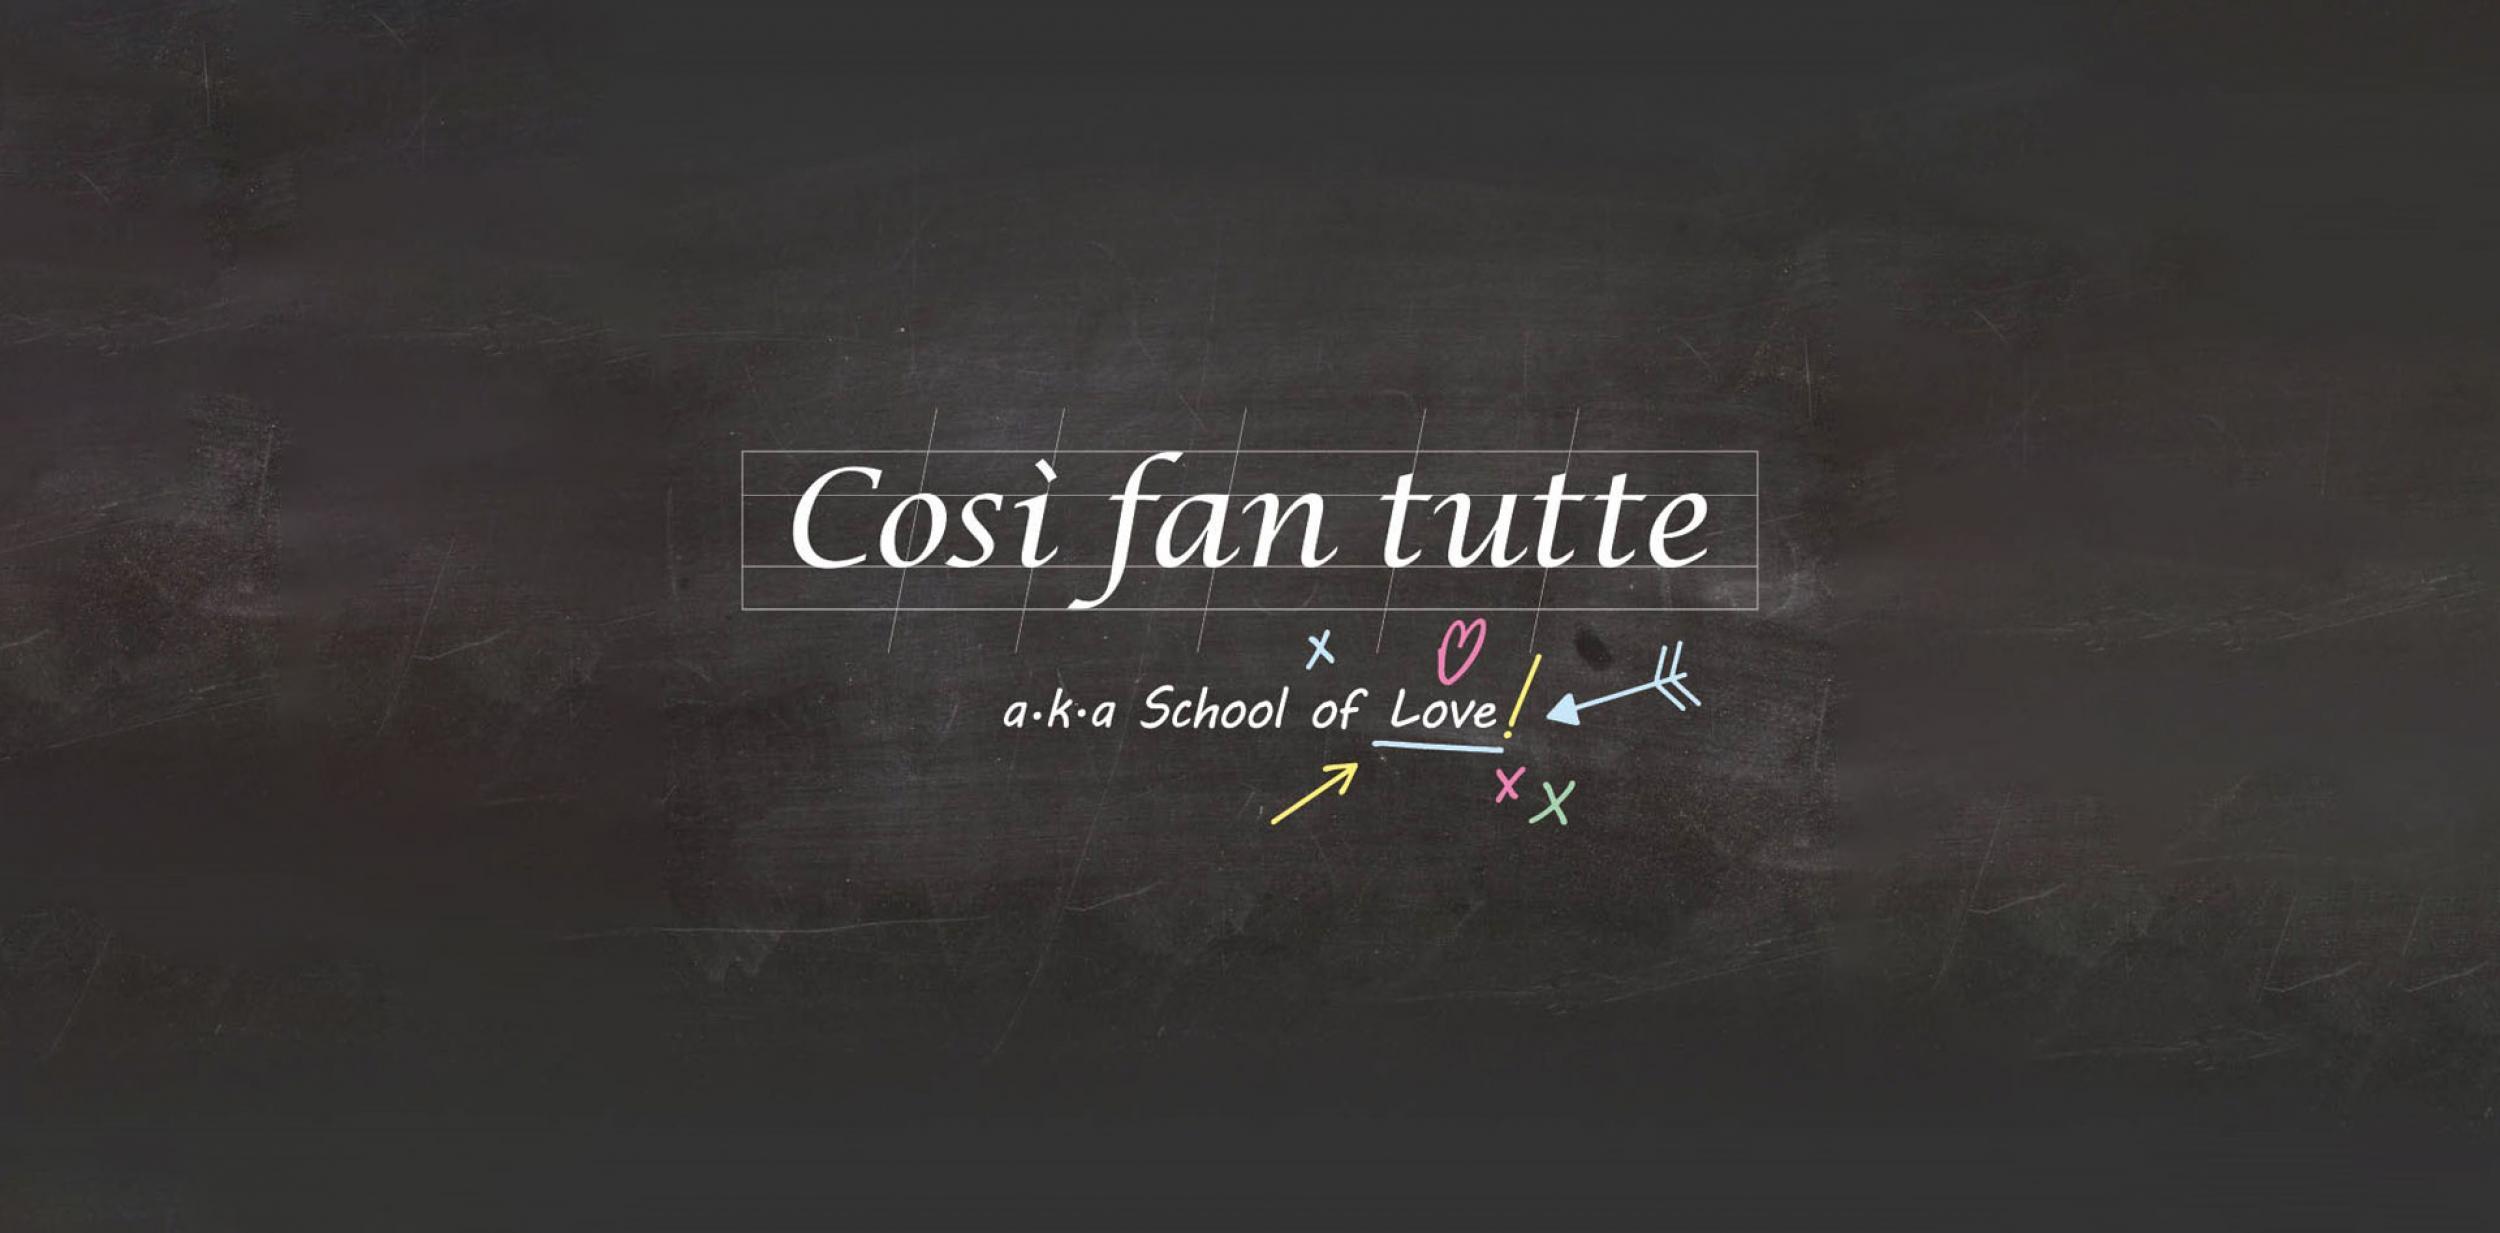 School blackboard with "Così fan tutte aka School of Love" written on it in chalk.